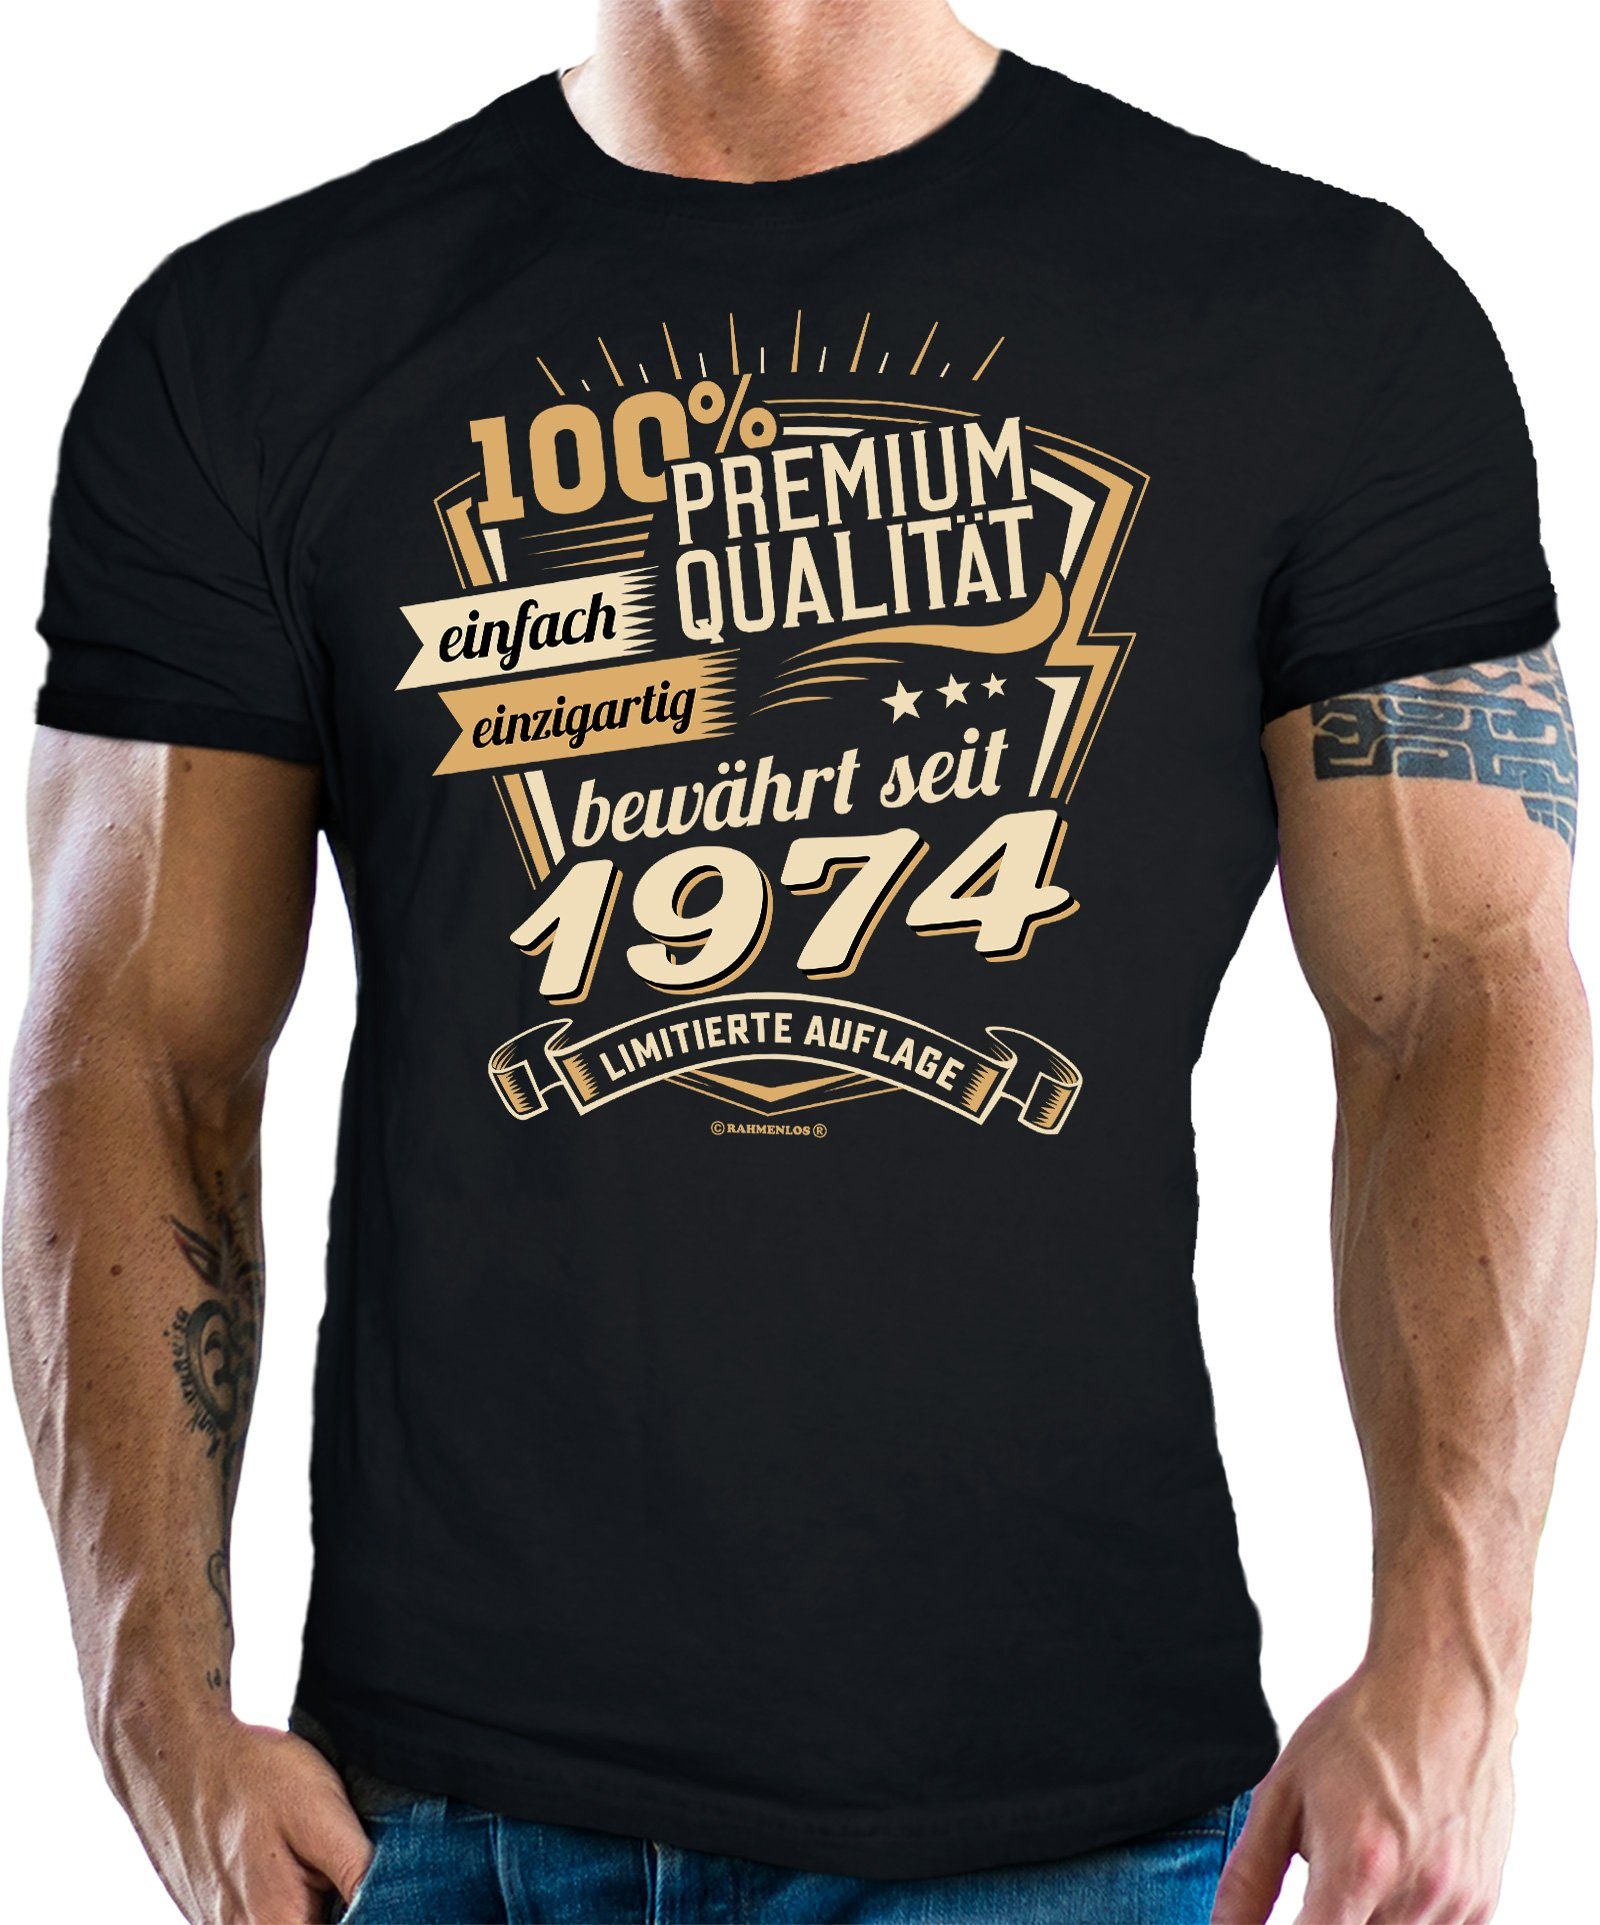 Rahmenlos T-Shirt als Geschenk zum 50. Geburtstag - Premium bewährt seit 1974 | T-Shirts